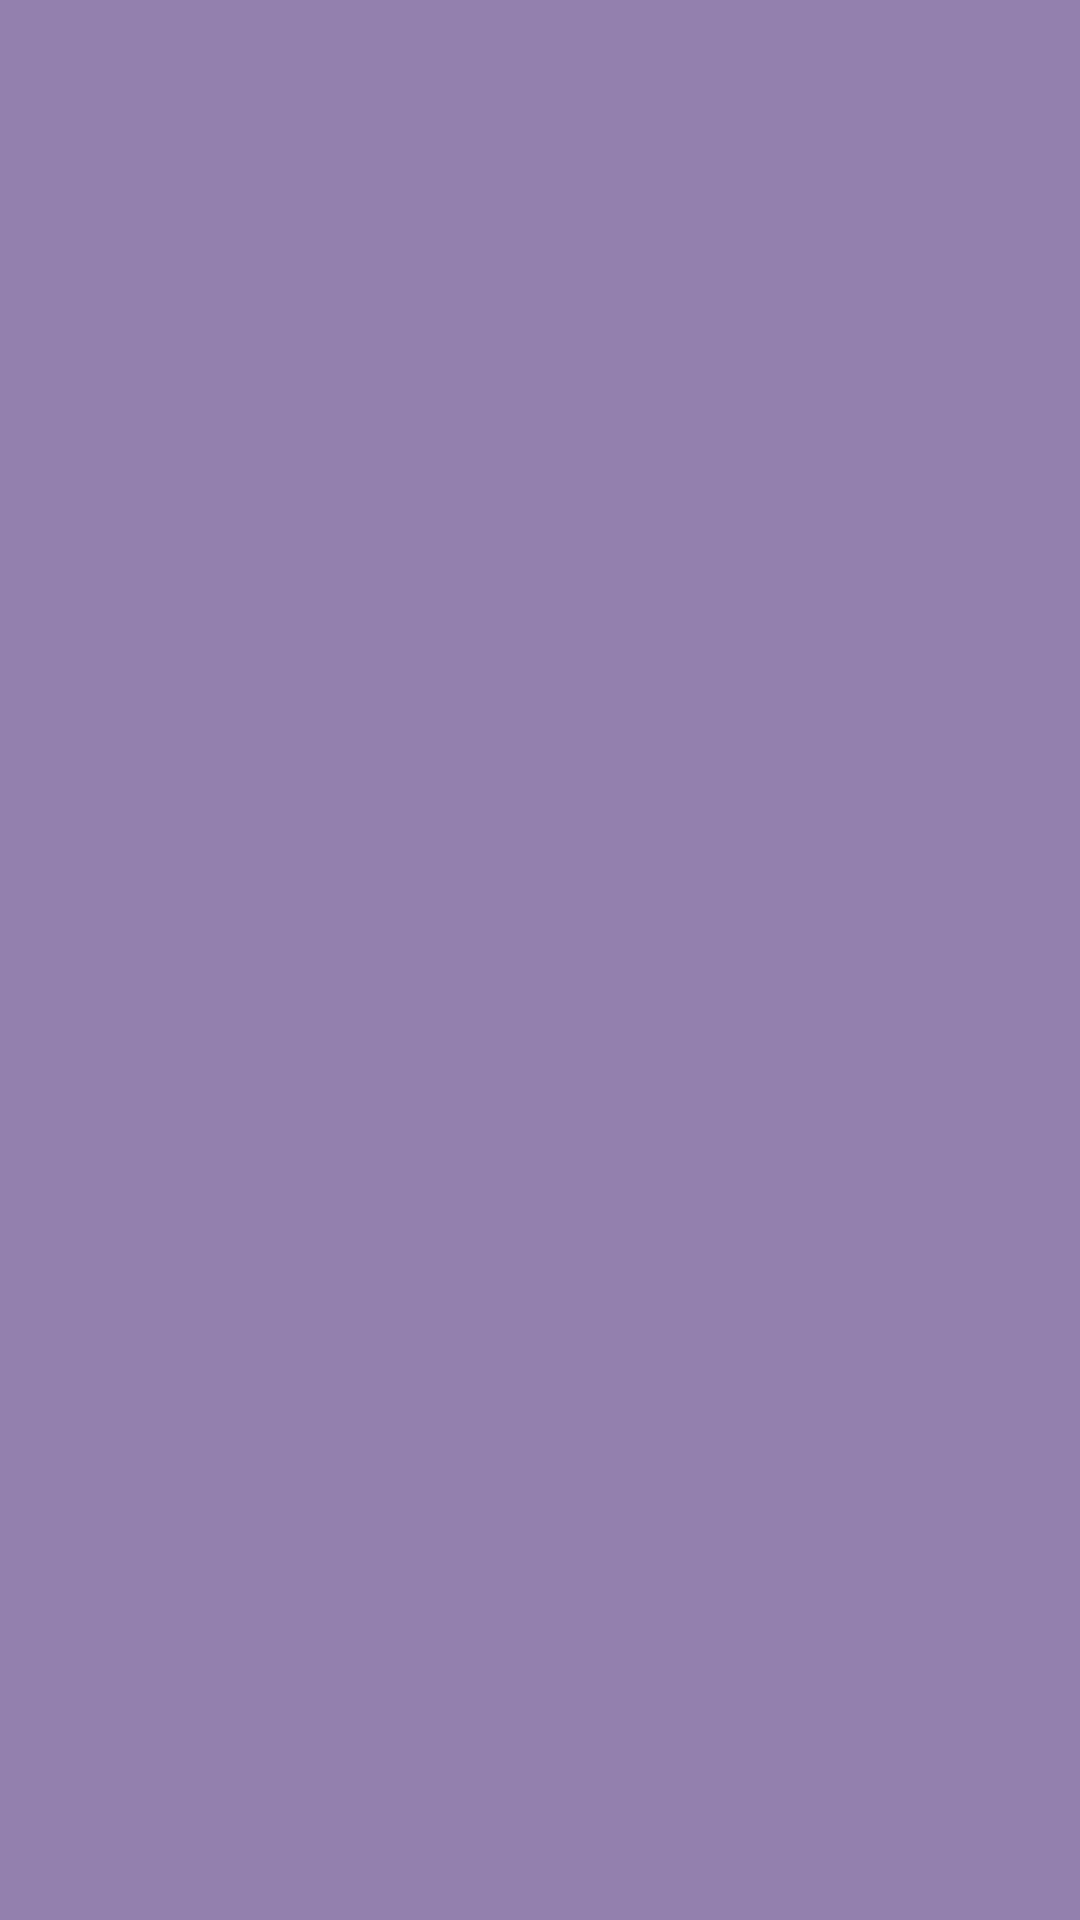 Dark Purple Plain Texture HD Dark Purple Wallpapers  HD Wallpapers  ID  55819